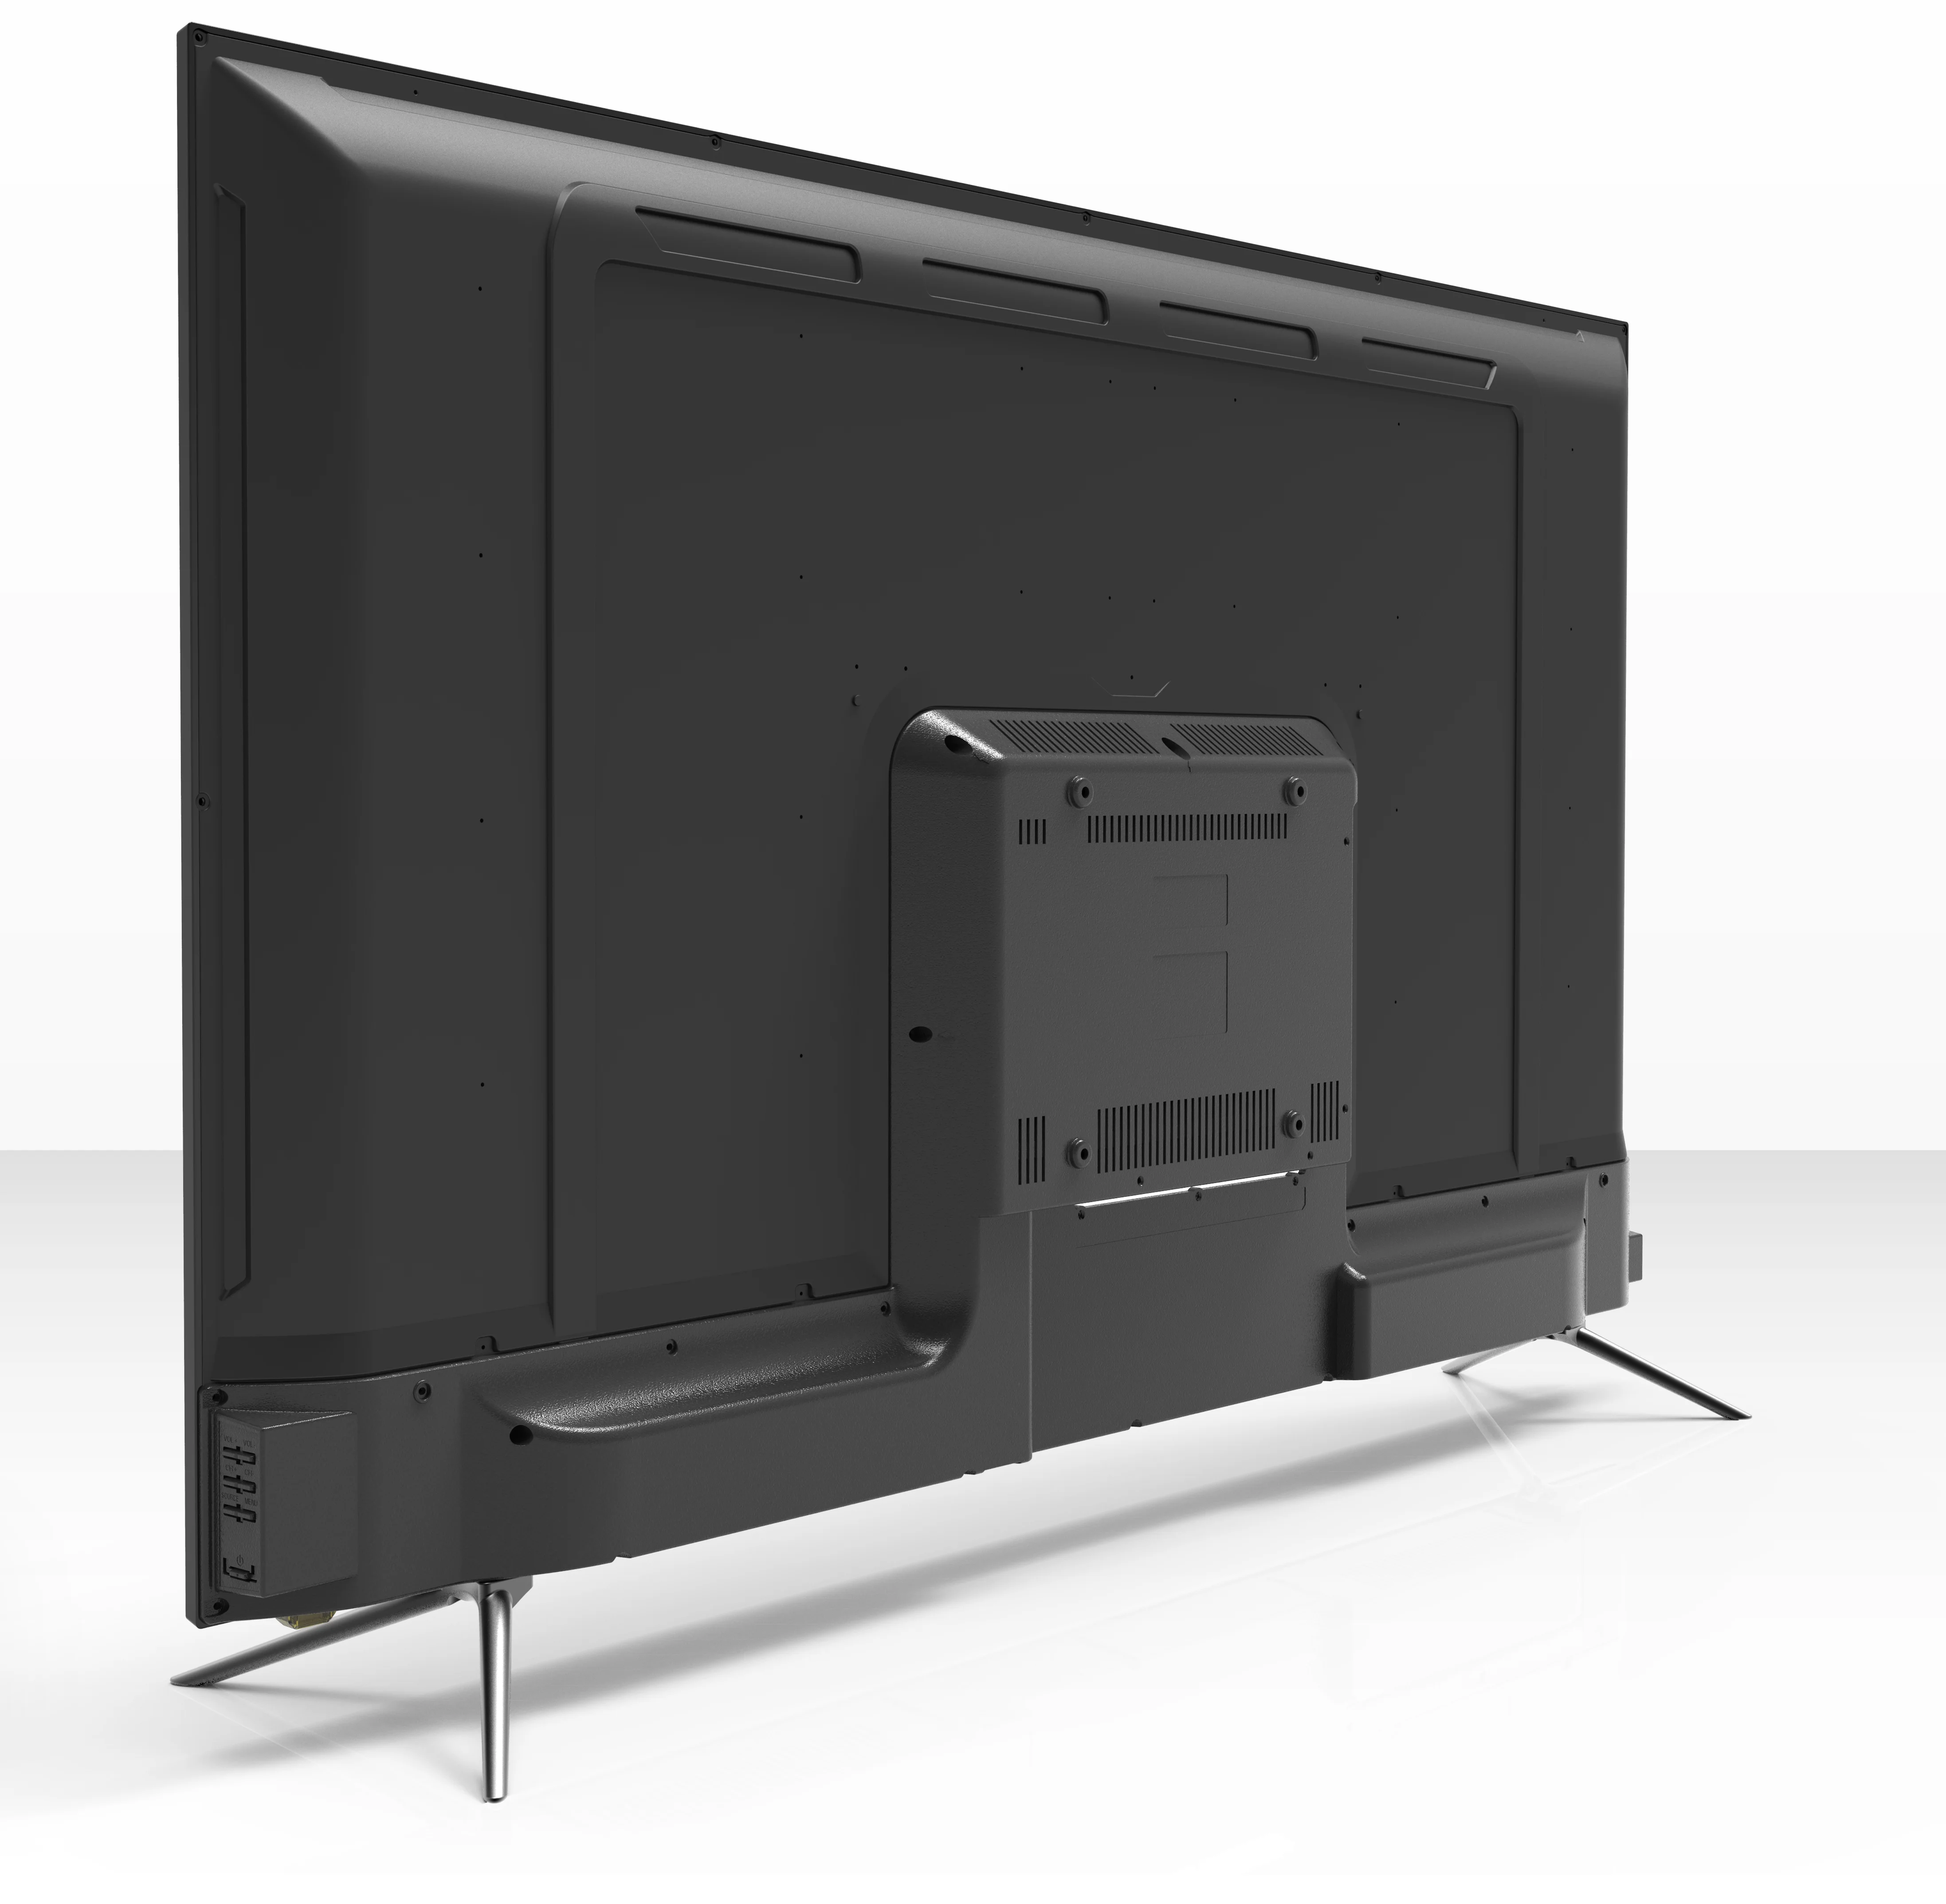 Лучшее качество A Класс панель 55 дюймов led-телевизор изогнутые smart tv Телевизор с плоским